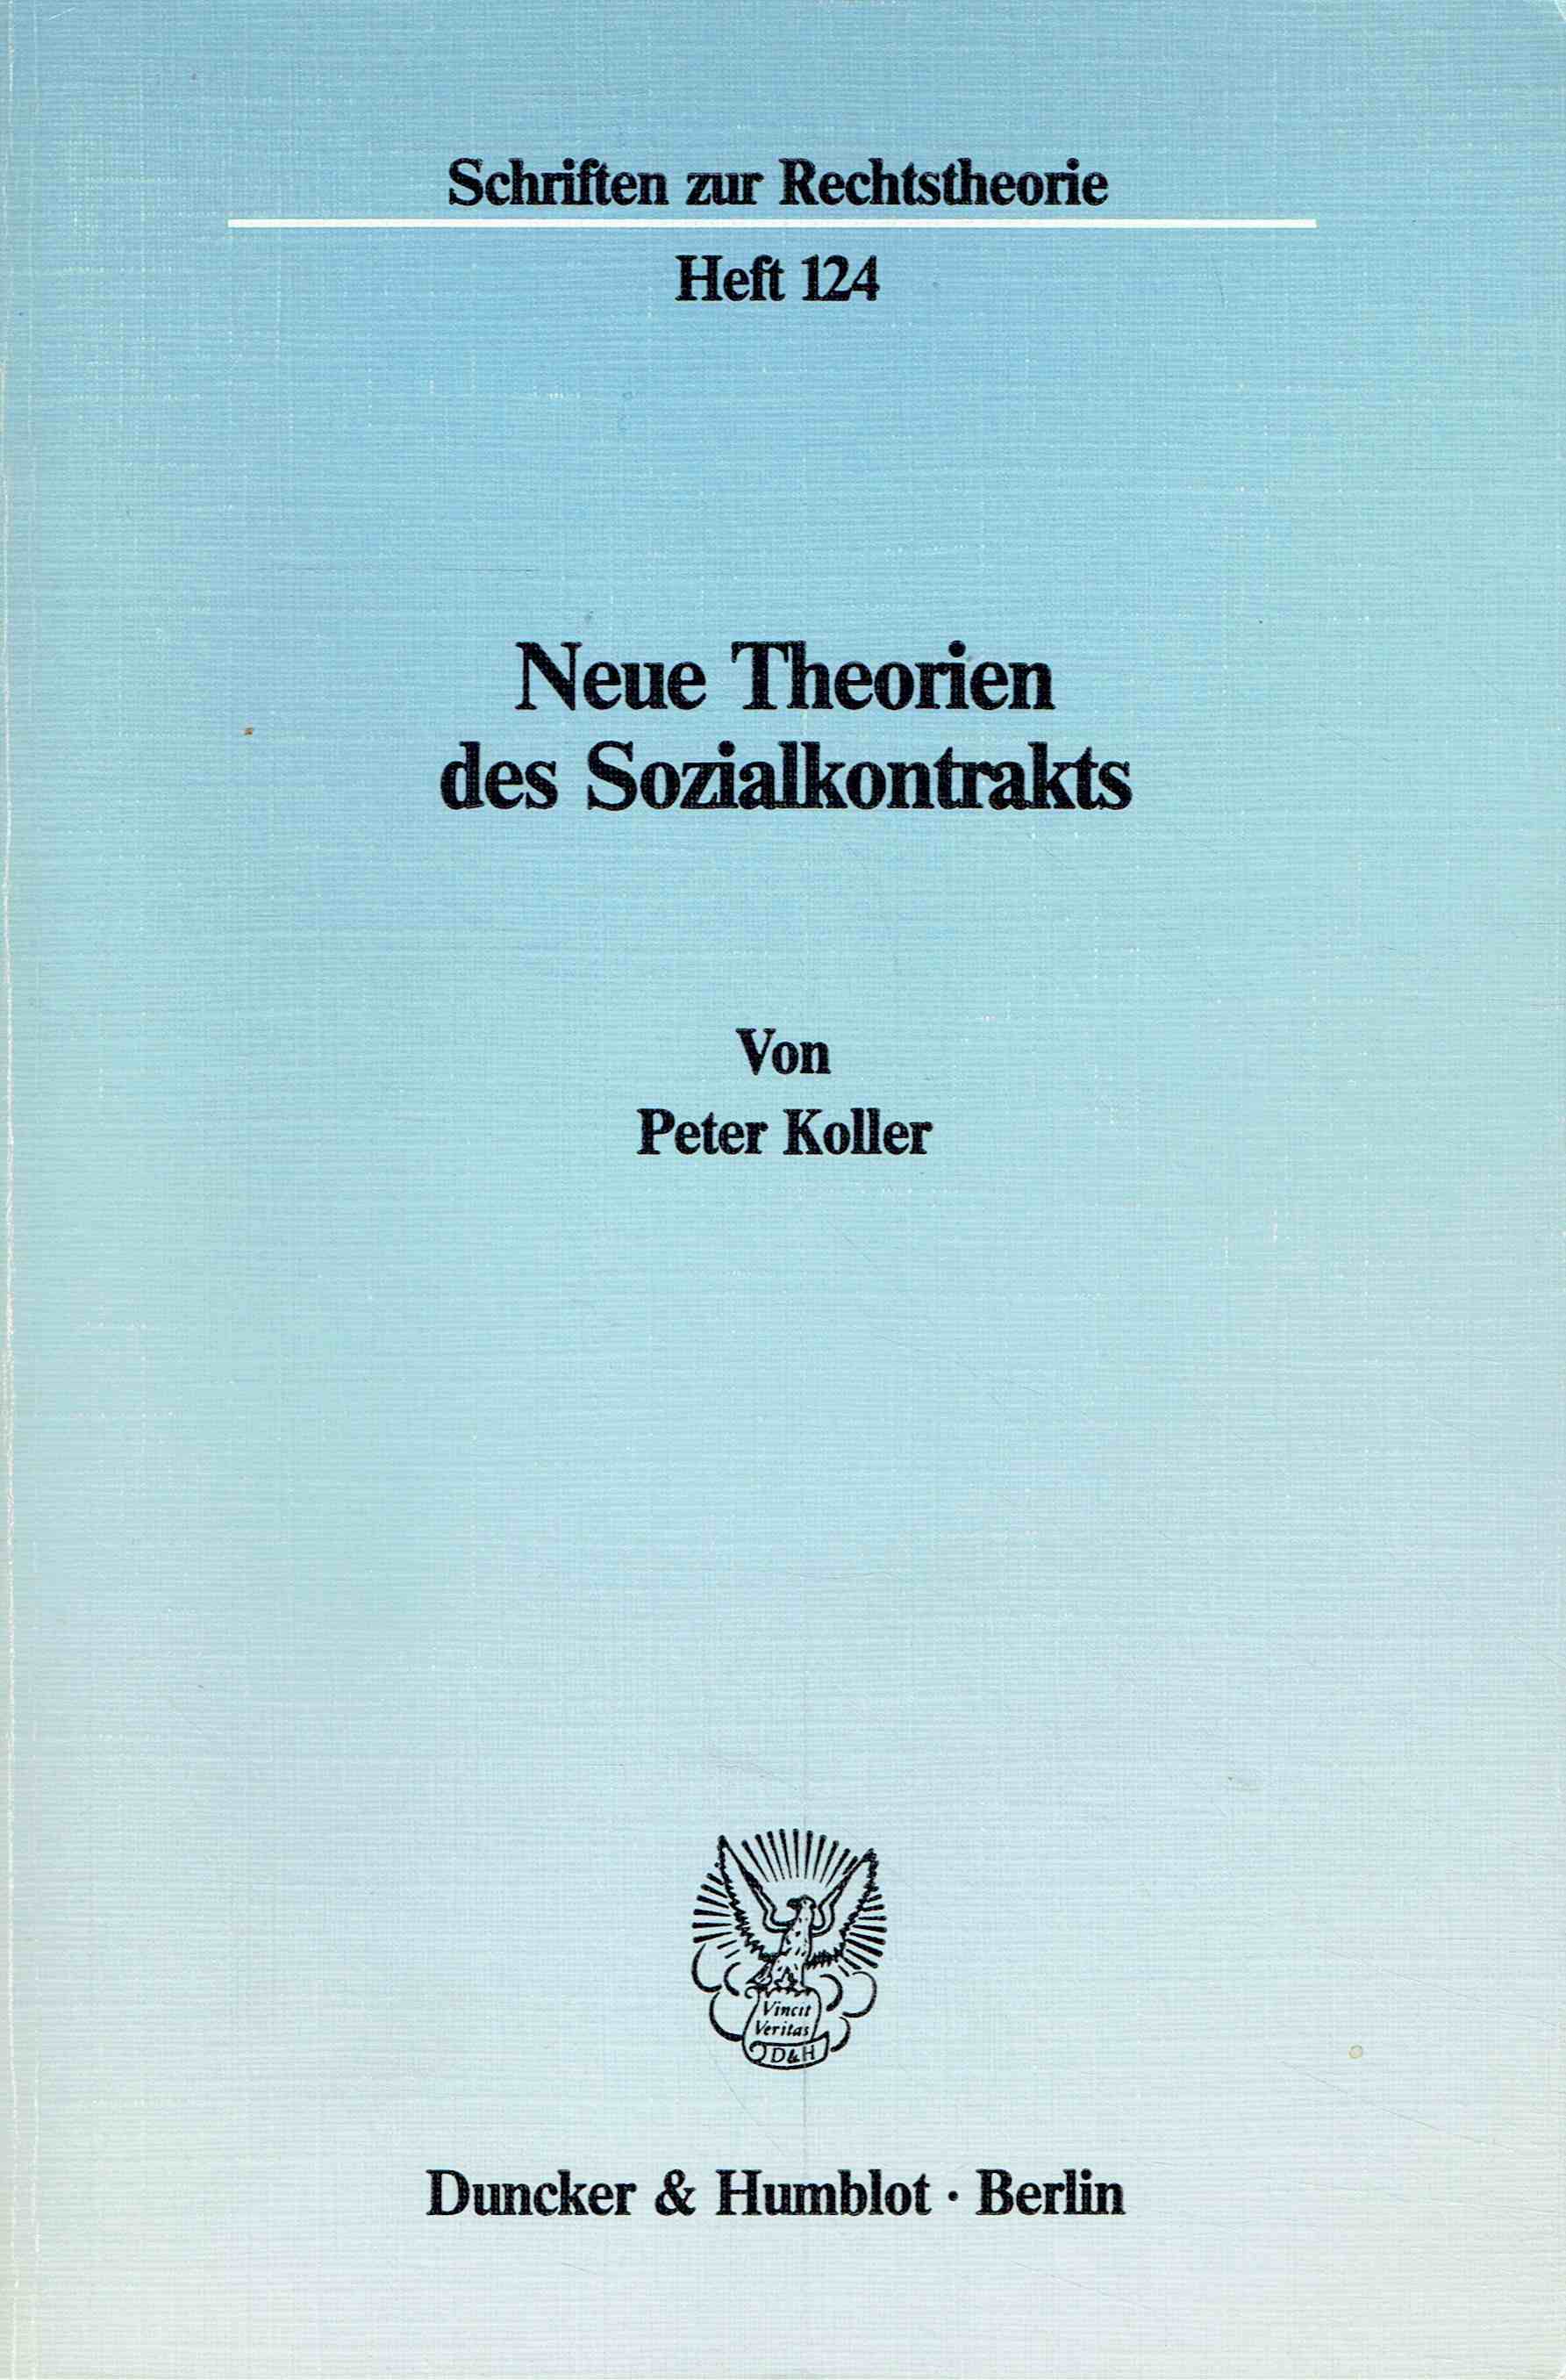 Neue Theorien des Sozialkontrakts. (Schriften zur Rechtstheorie, Heft 124). - Koller, Peter